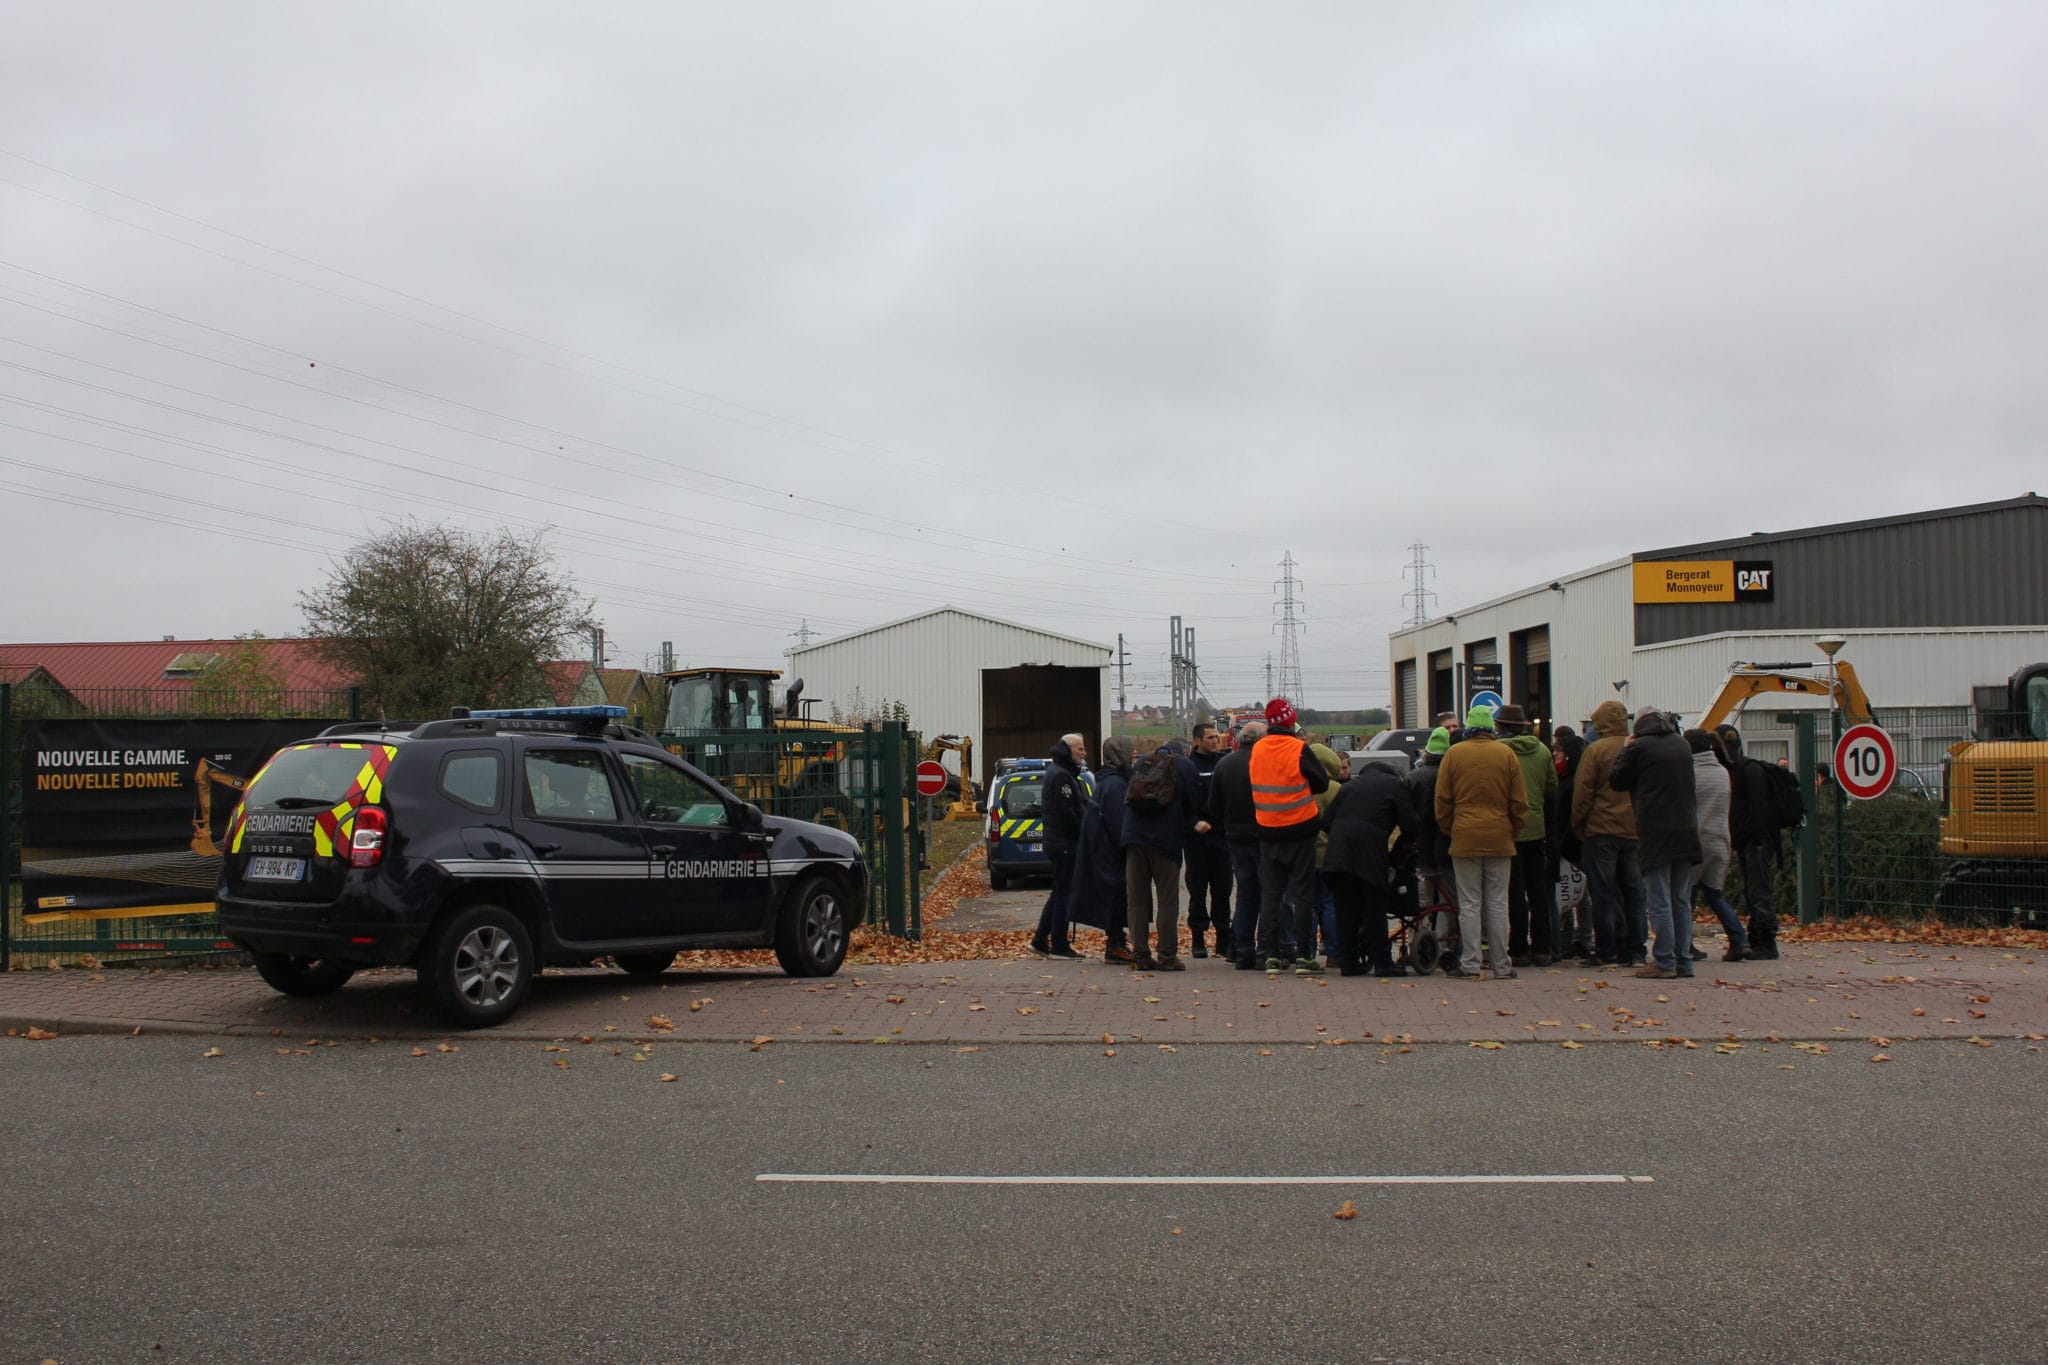 Lundi 29 octobre au petit matin, ils étaient une bonne vingtaine de militants anti-GCO à empêcher toute sortie au dépôt Caterpillar de Vendenheim.(photo NS / Rue89 Strasbourg / cc)